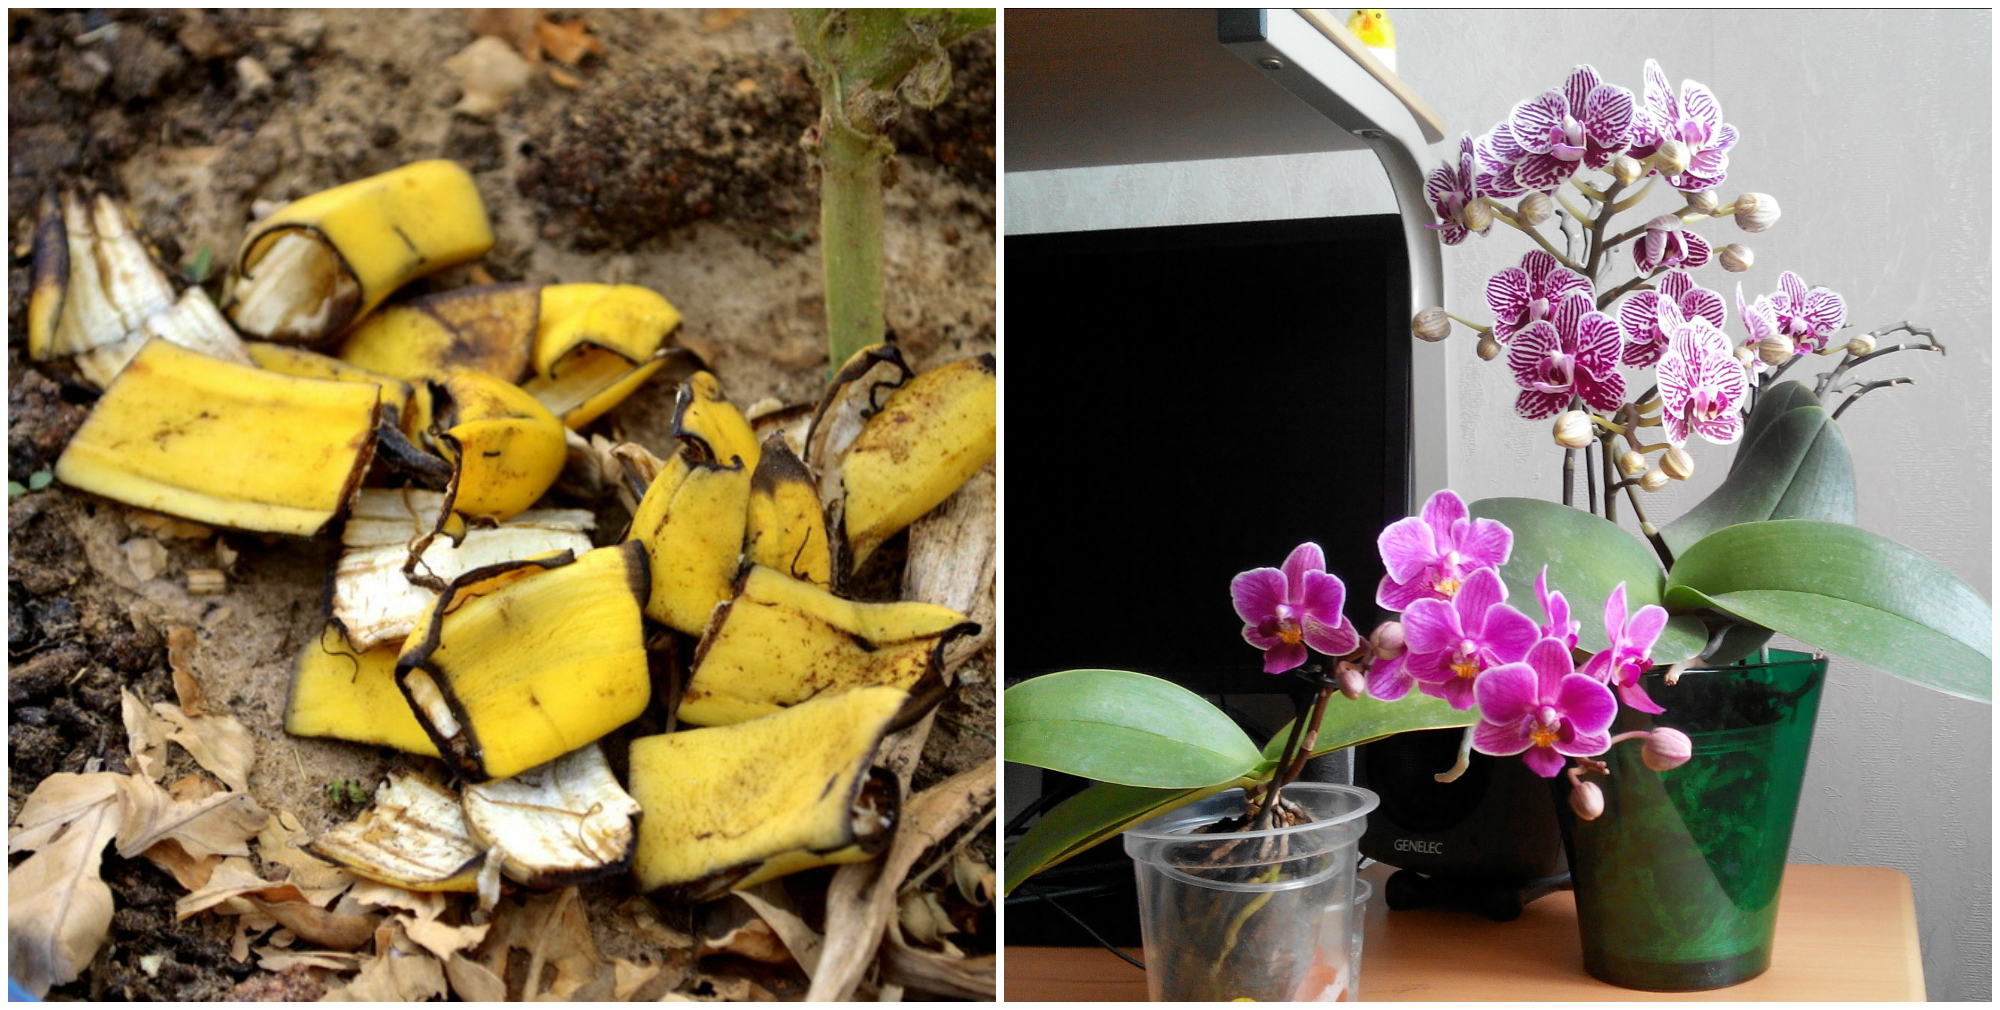 Корки бананов для цветов. Кожура банана для полива комнатных цветов. Полив банановой кожурой цветы. Банановый настой для полива комнатных цветов. Подкормка для орхидей из банановой кожуры.